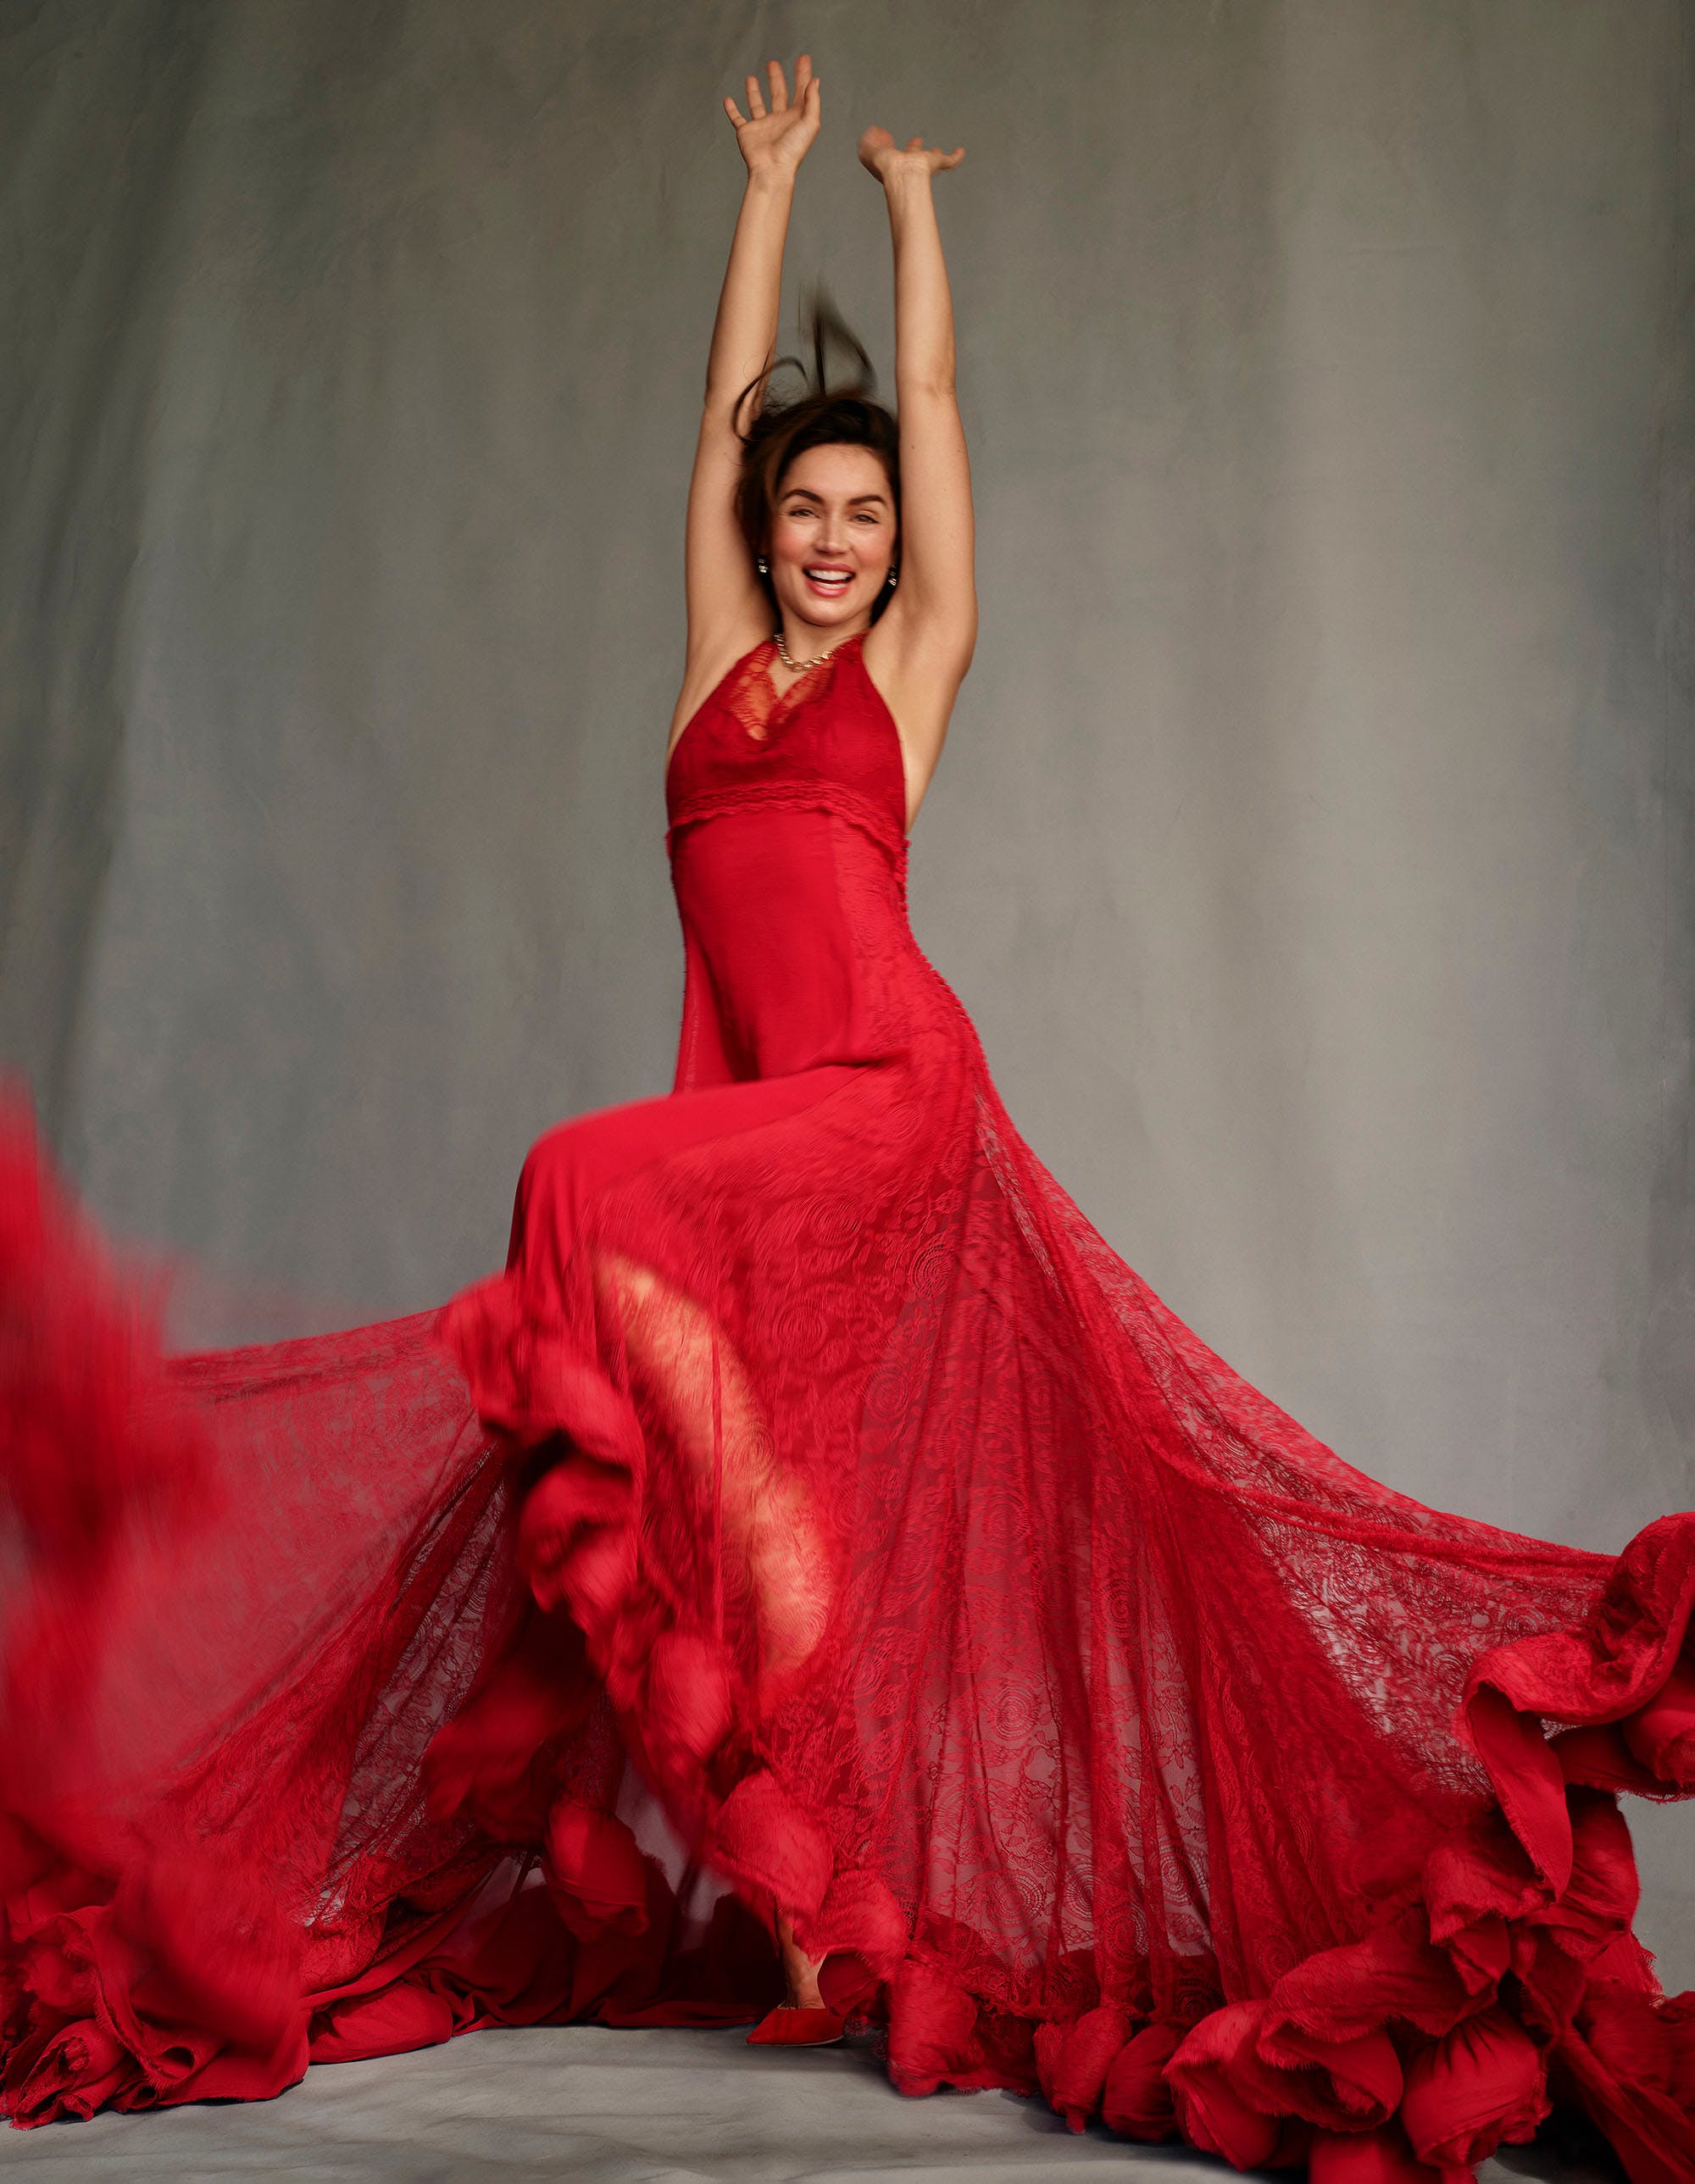 Ana de Armas in Red Dress Wallpapers